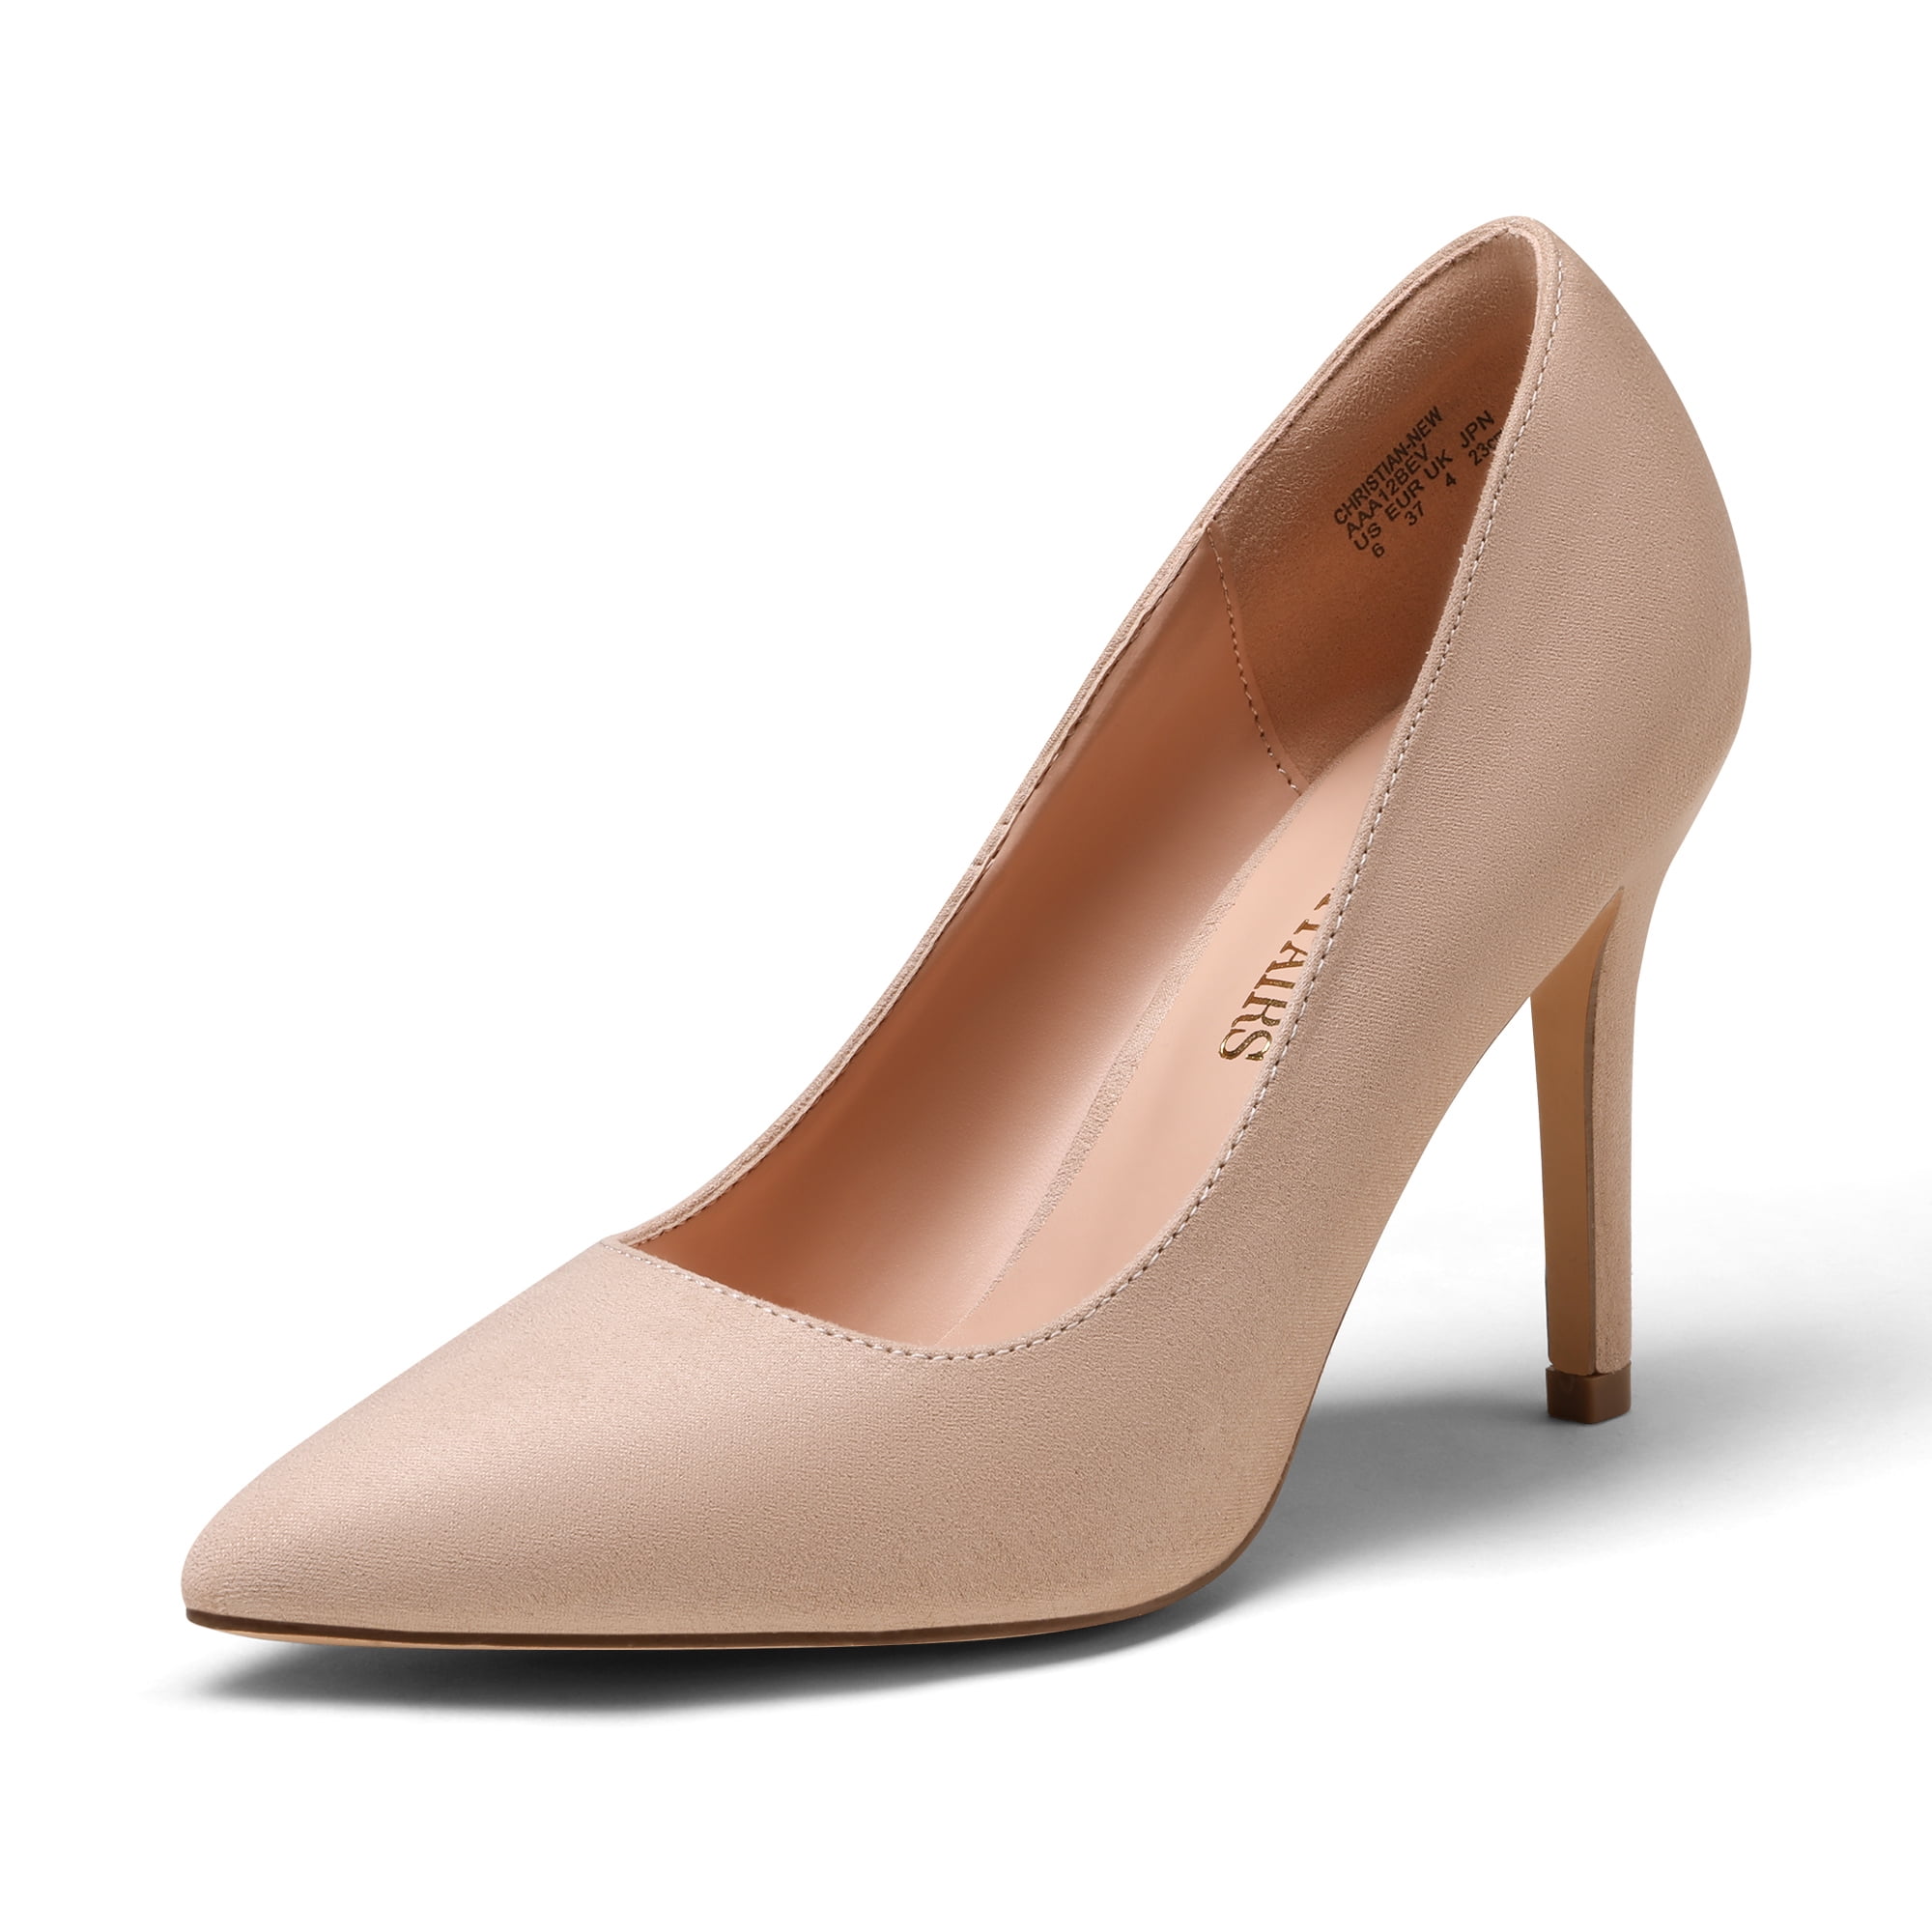 T. U. K. Starlet Heel Size 9 | White high heel shoes, Red high heel pumps,  Heels